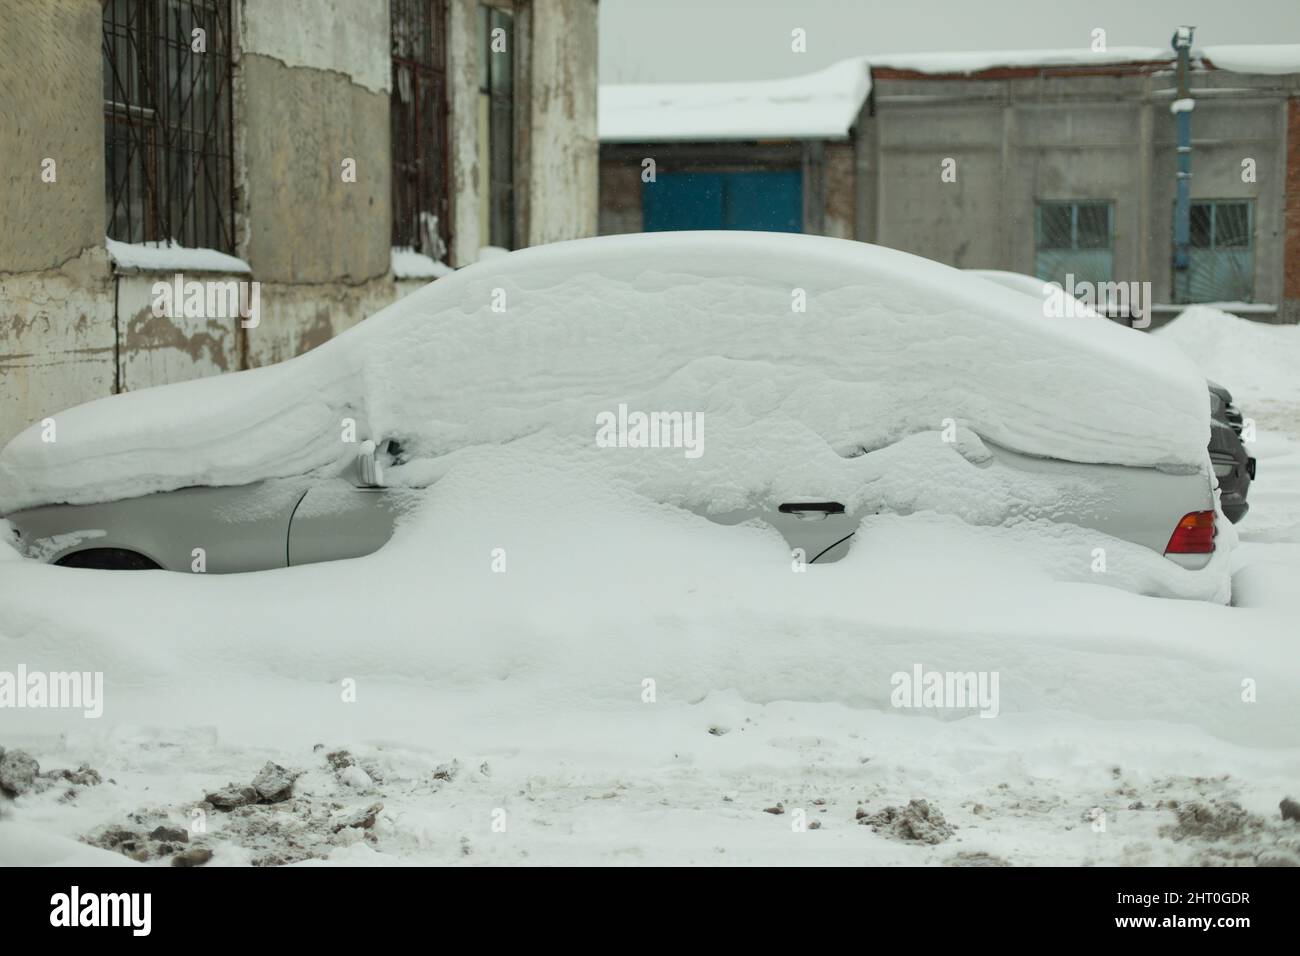 Auto unter dicker schneedecke nach sturm. unter eis begrabene fahrzeuge.  niemand